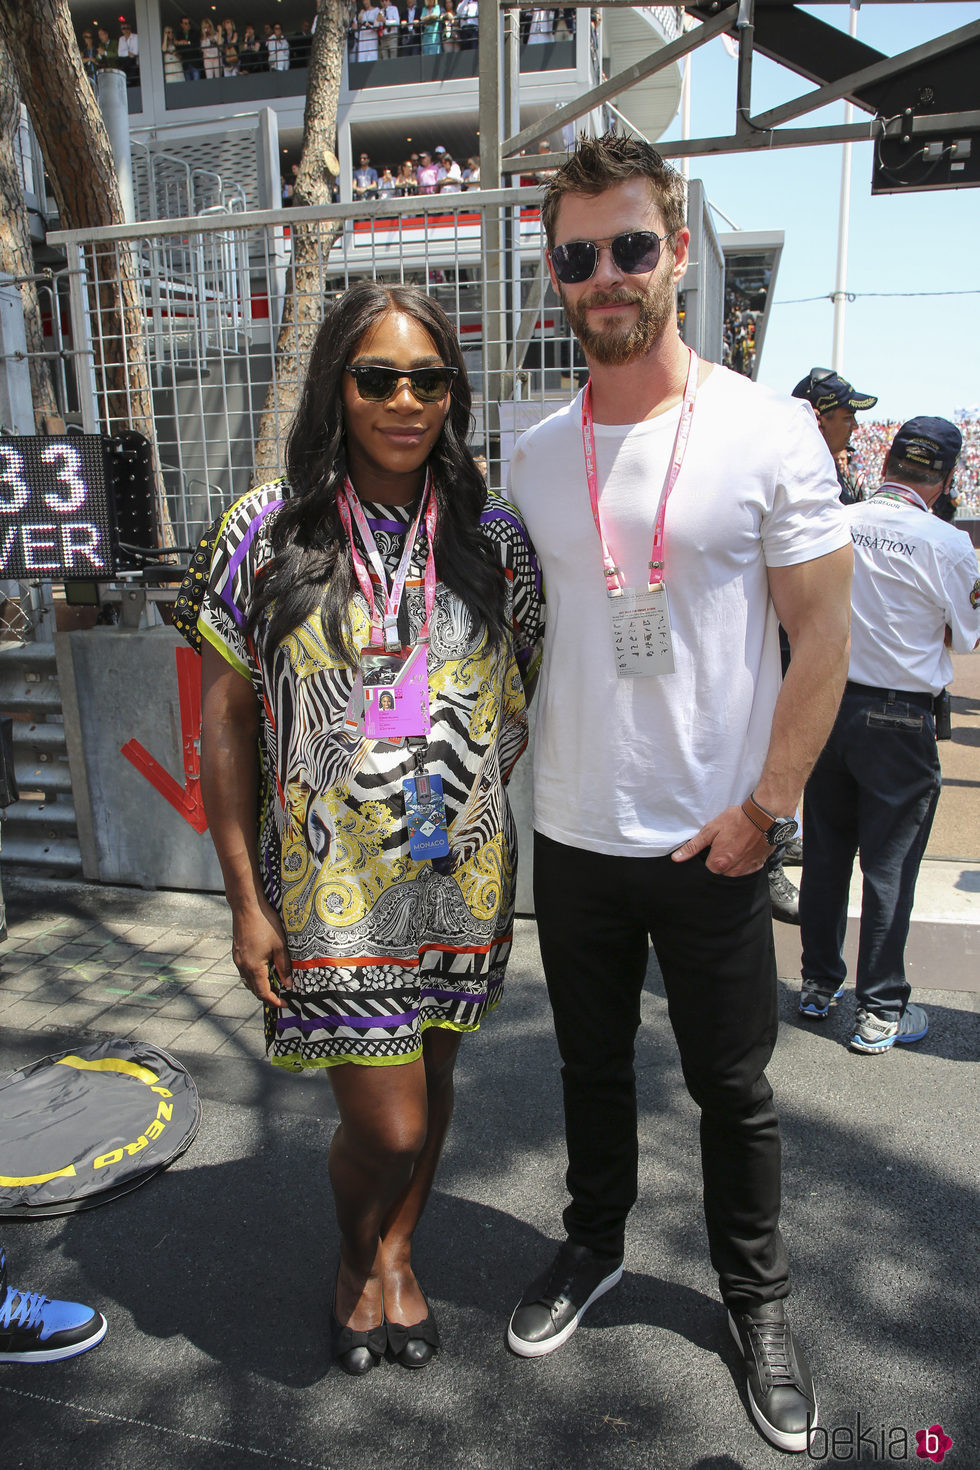 Serena Williams y Chris Hemsworth en el GP de Mónaco 2017